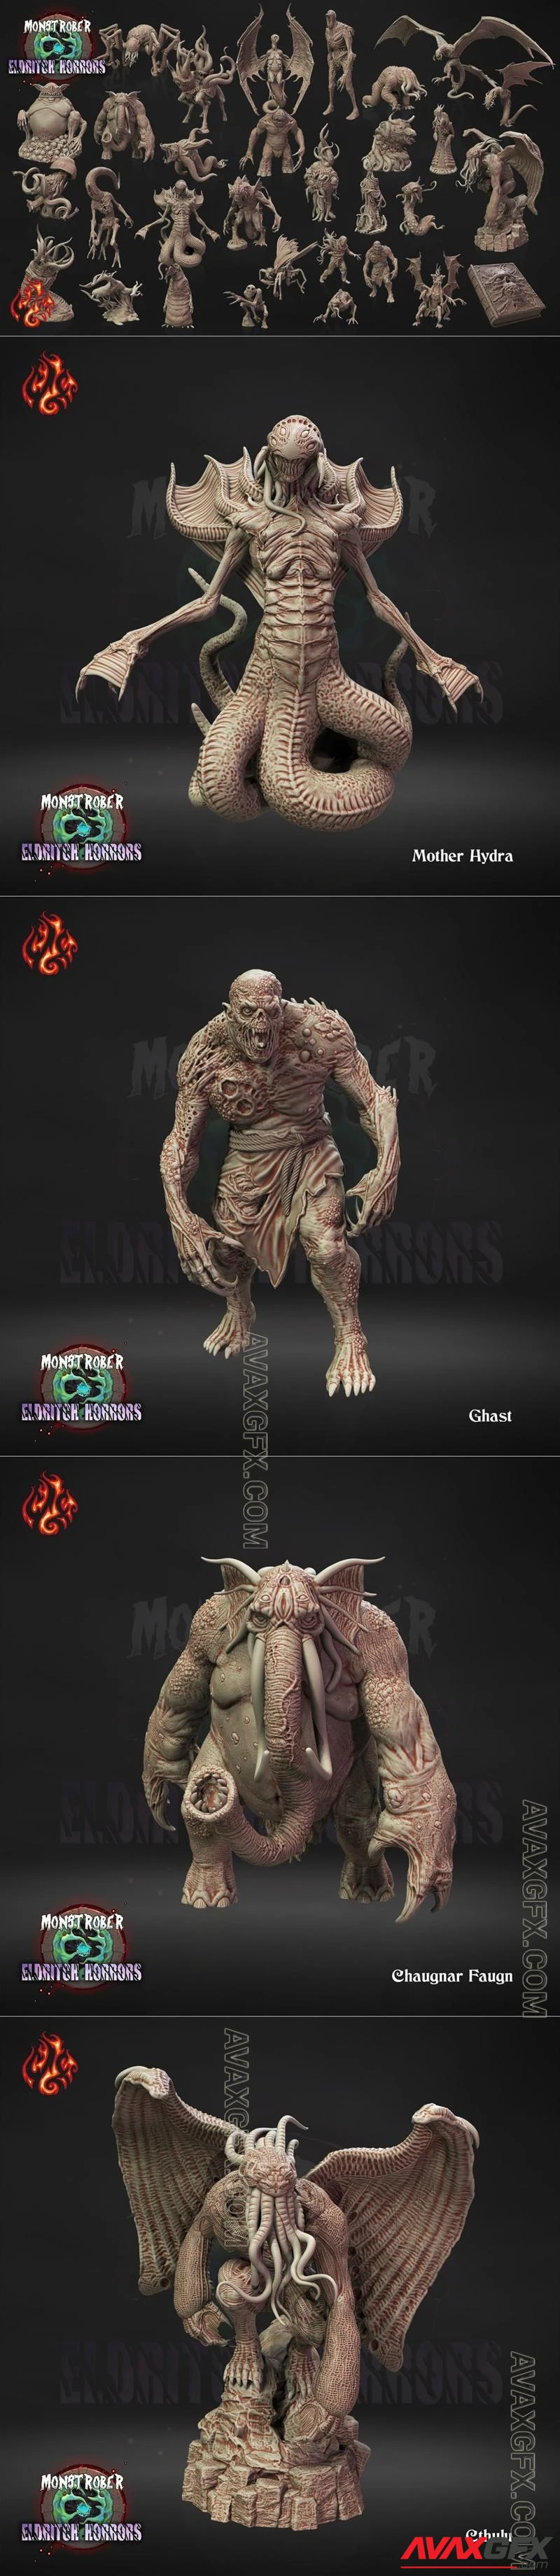 Crippled God Foundry - Monstrober V - Eldritch Horrors - STL 3D Model